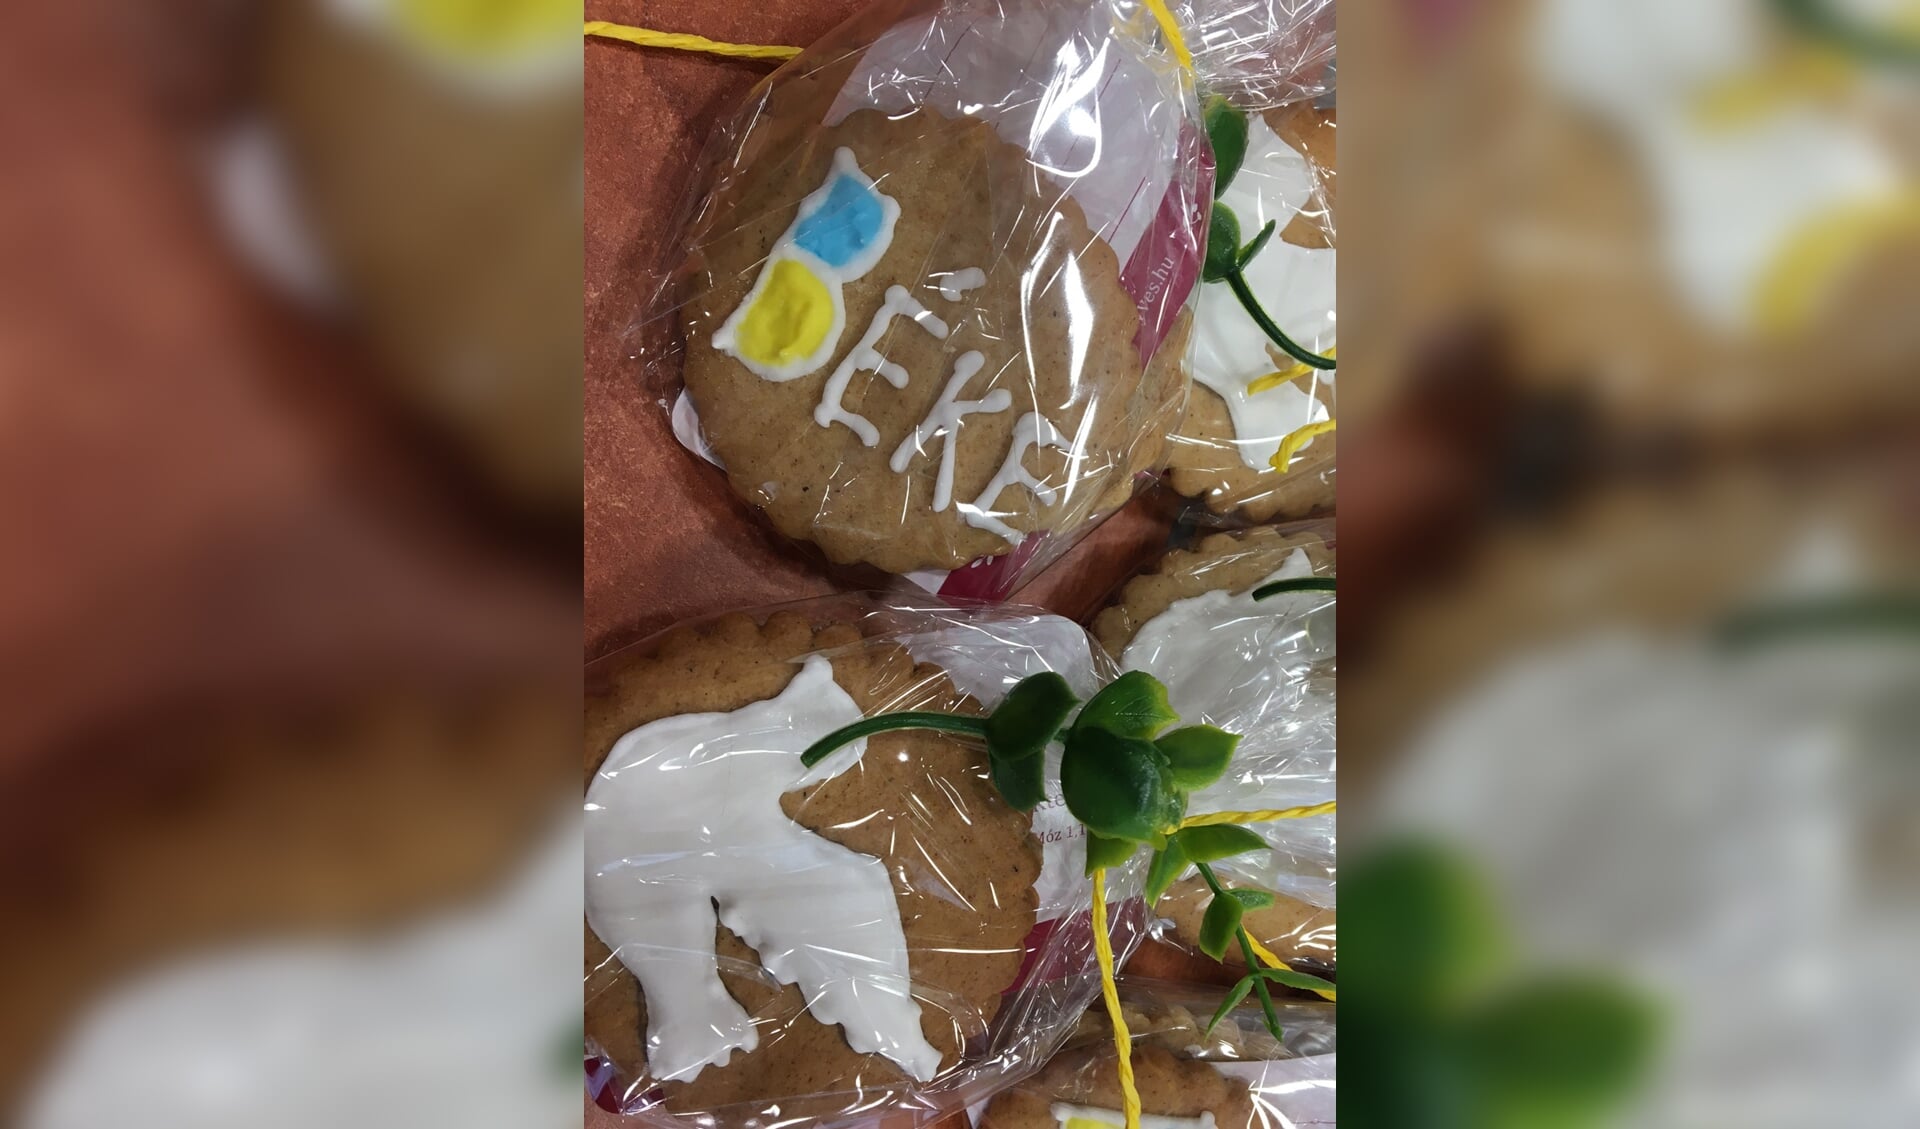 De kinderen kregen als beloning koekjes uit Oekraïne met het opschrift ‘Béke’ wat ‘Vrede’ betekent.